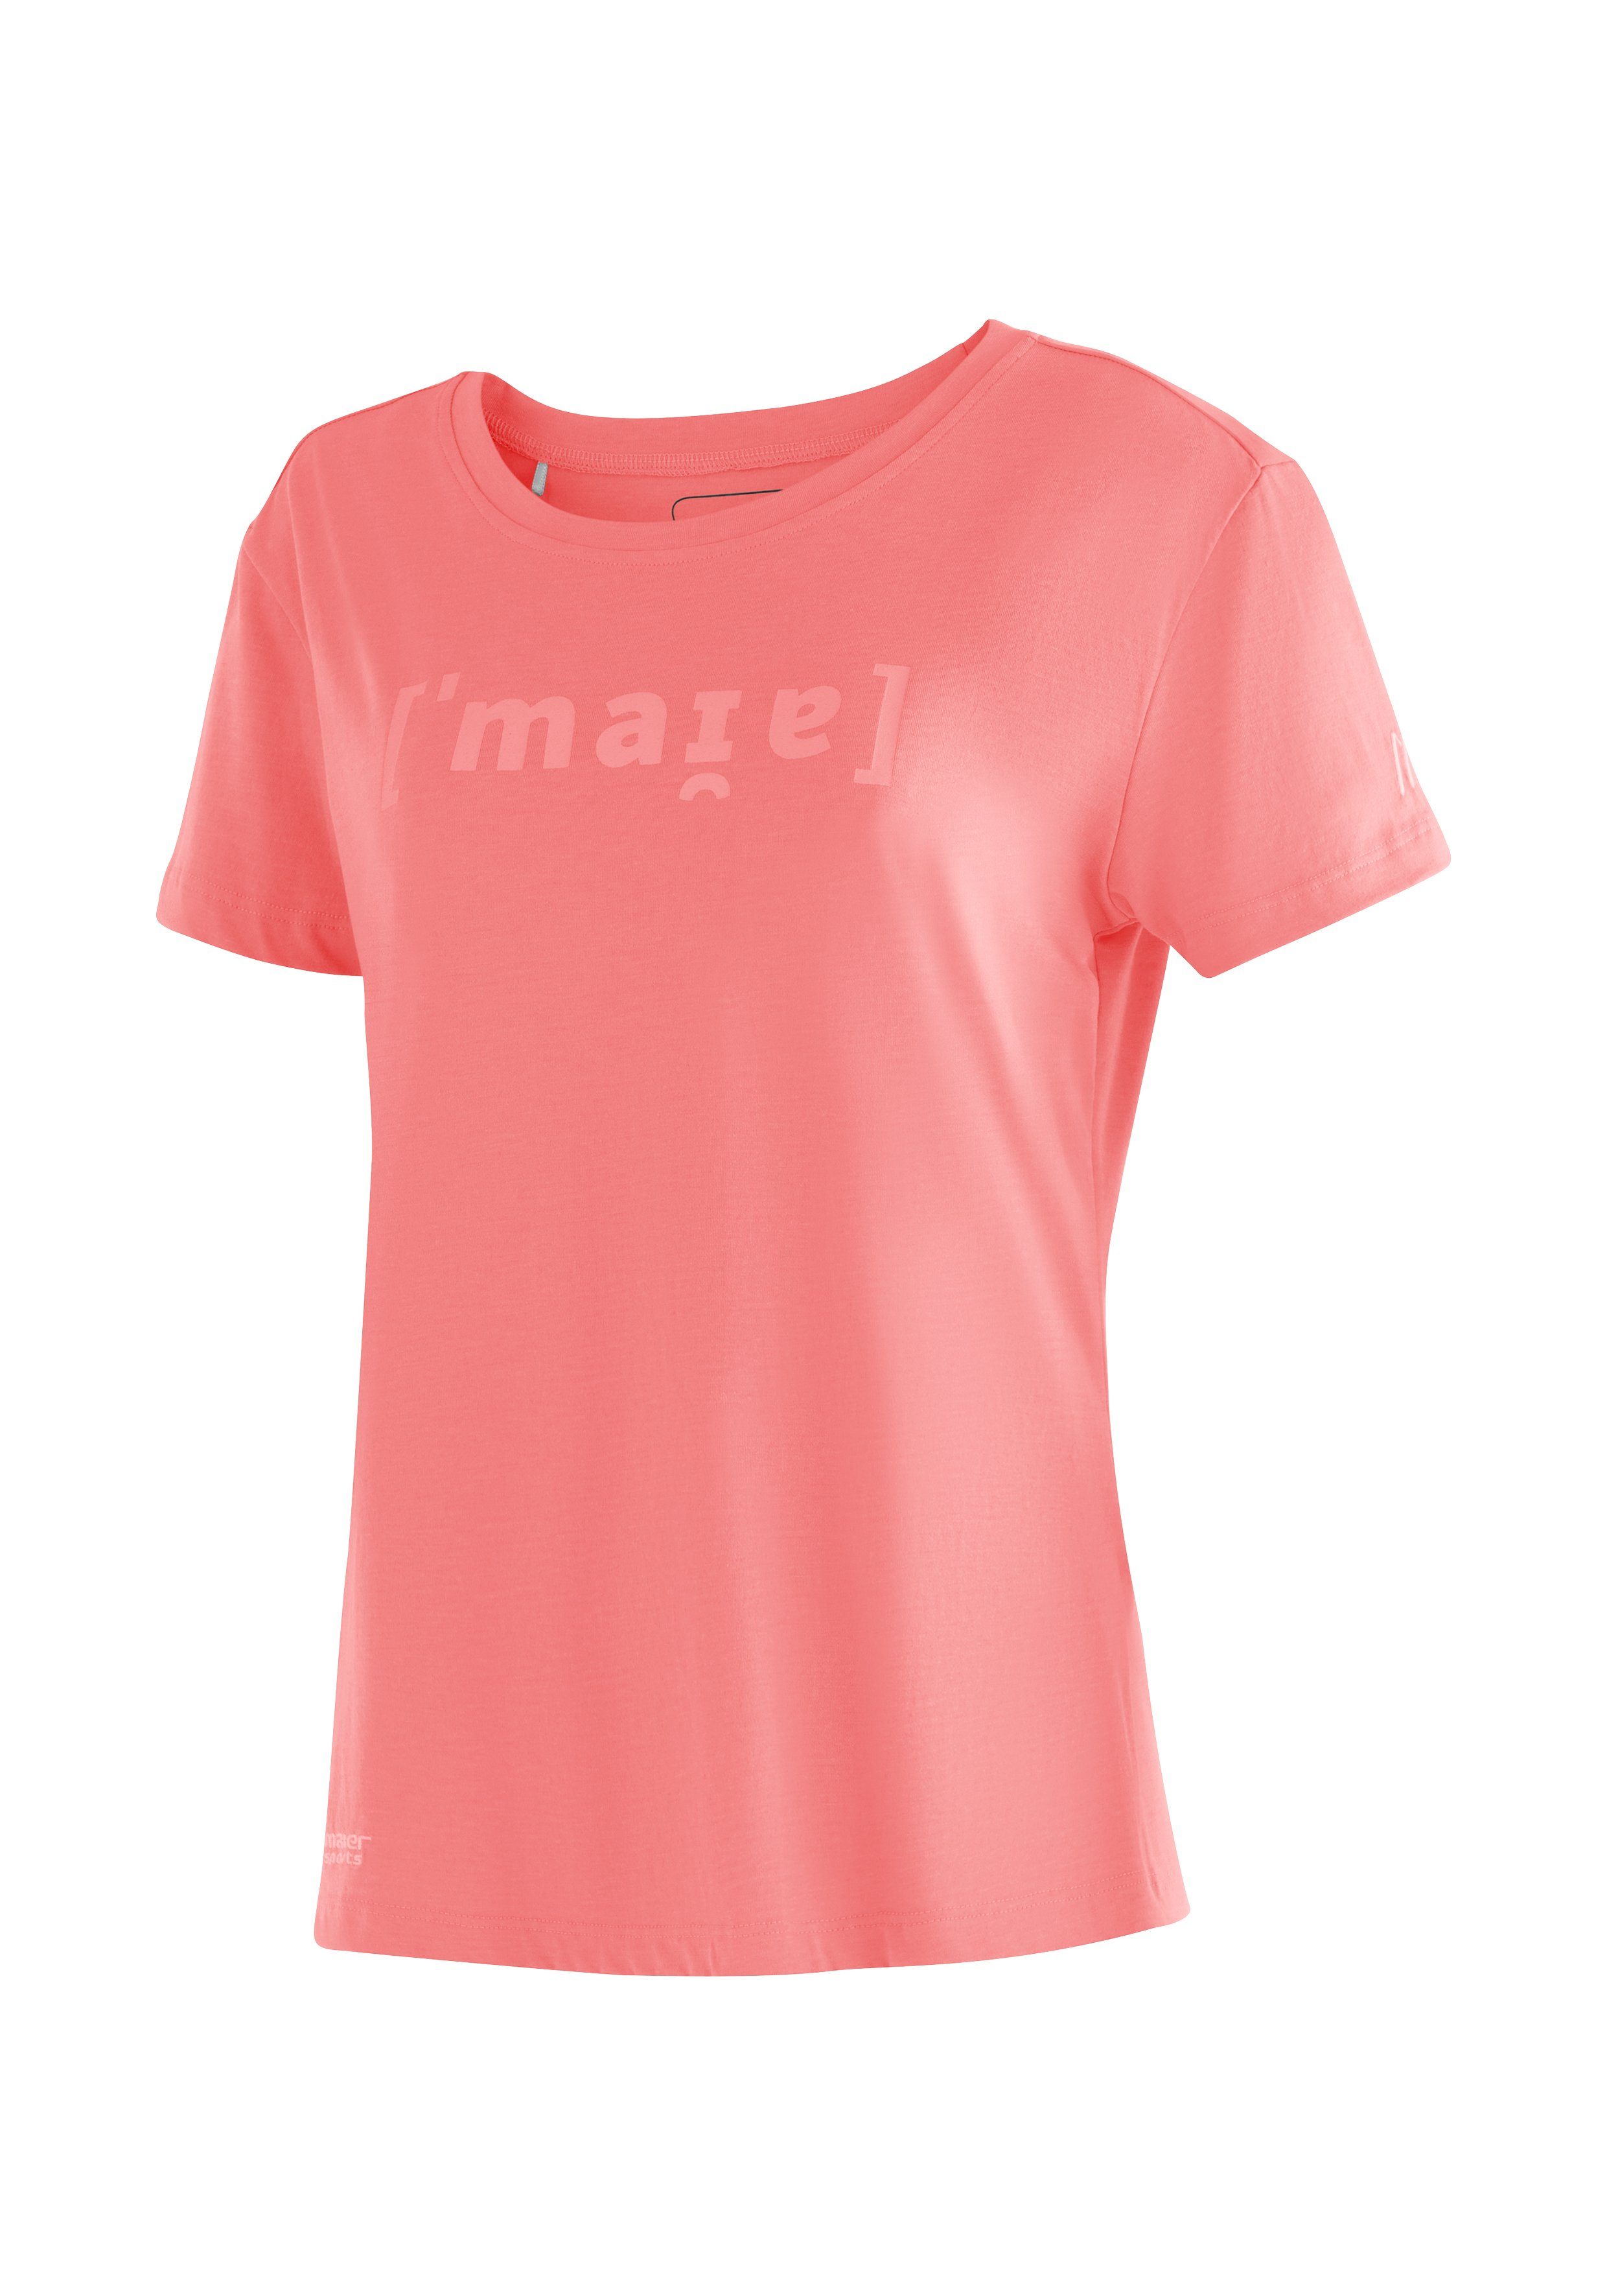 Maier Sports T-Shirt Phonetic Tee W Damen Kurzarmshirt mit Print für Wandern und Freizeit perlrosa | Sport-T-Shirts